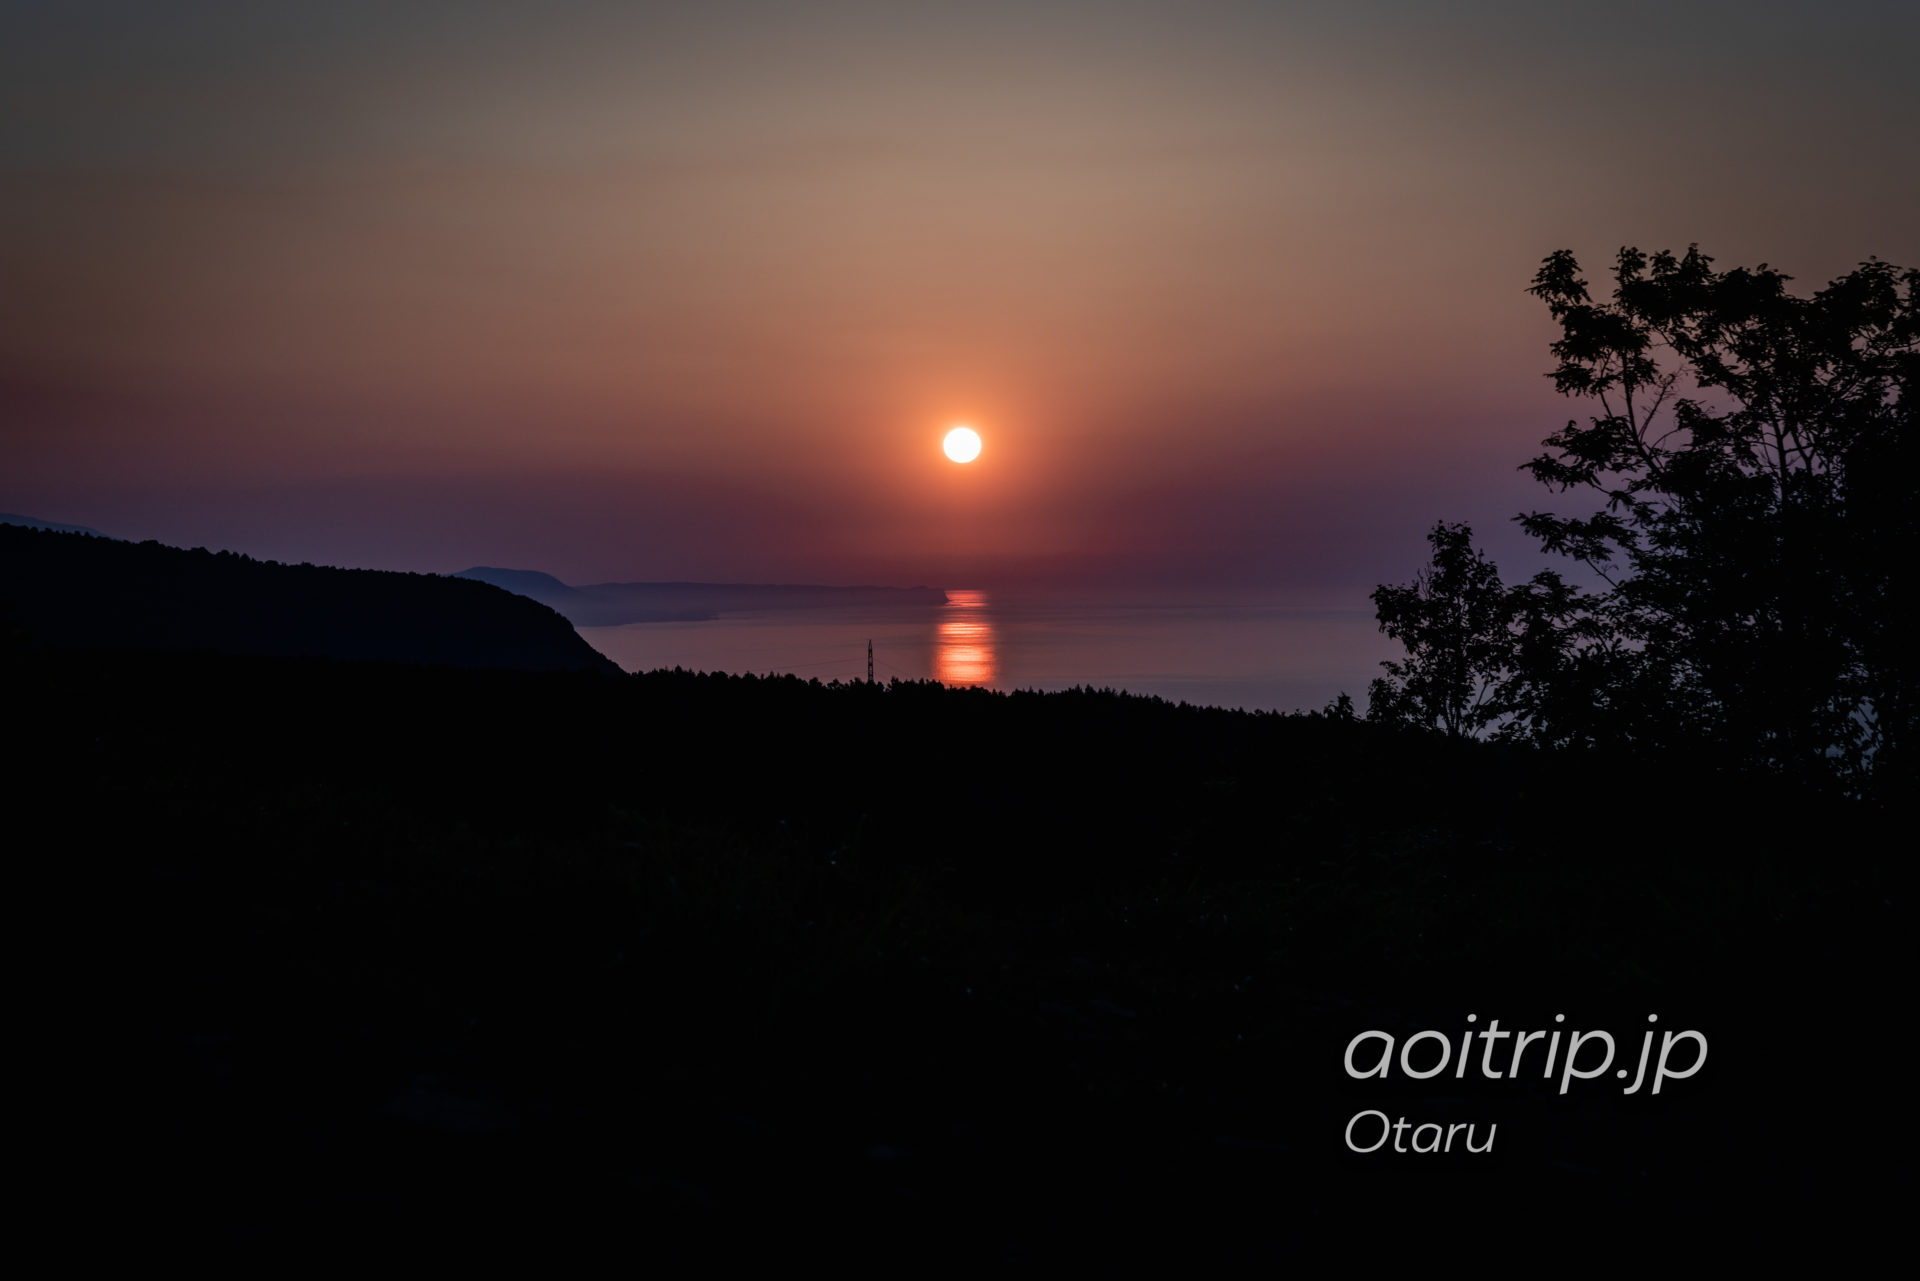 小樽天狗山展望台から望む夕日 積丹半島の脇に沈む